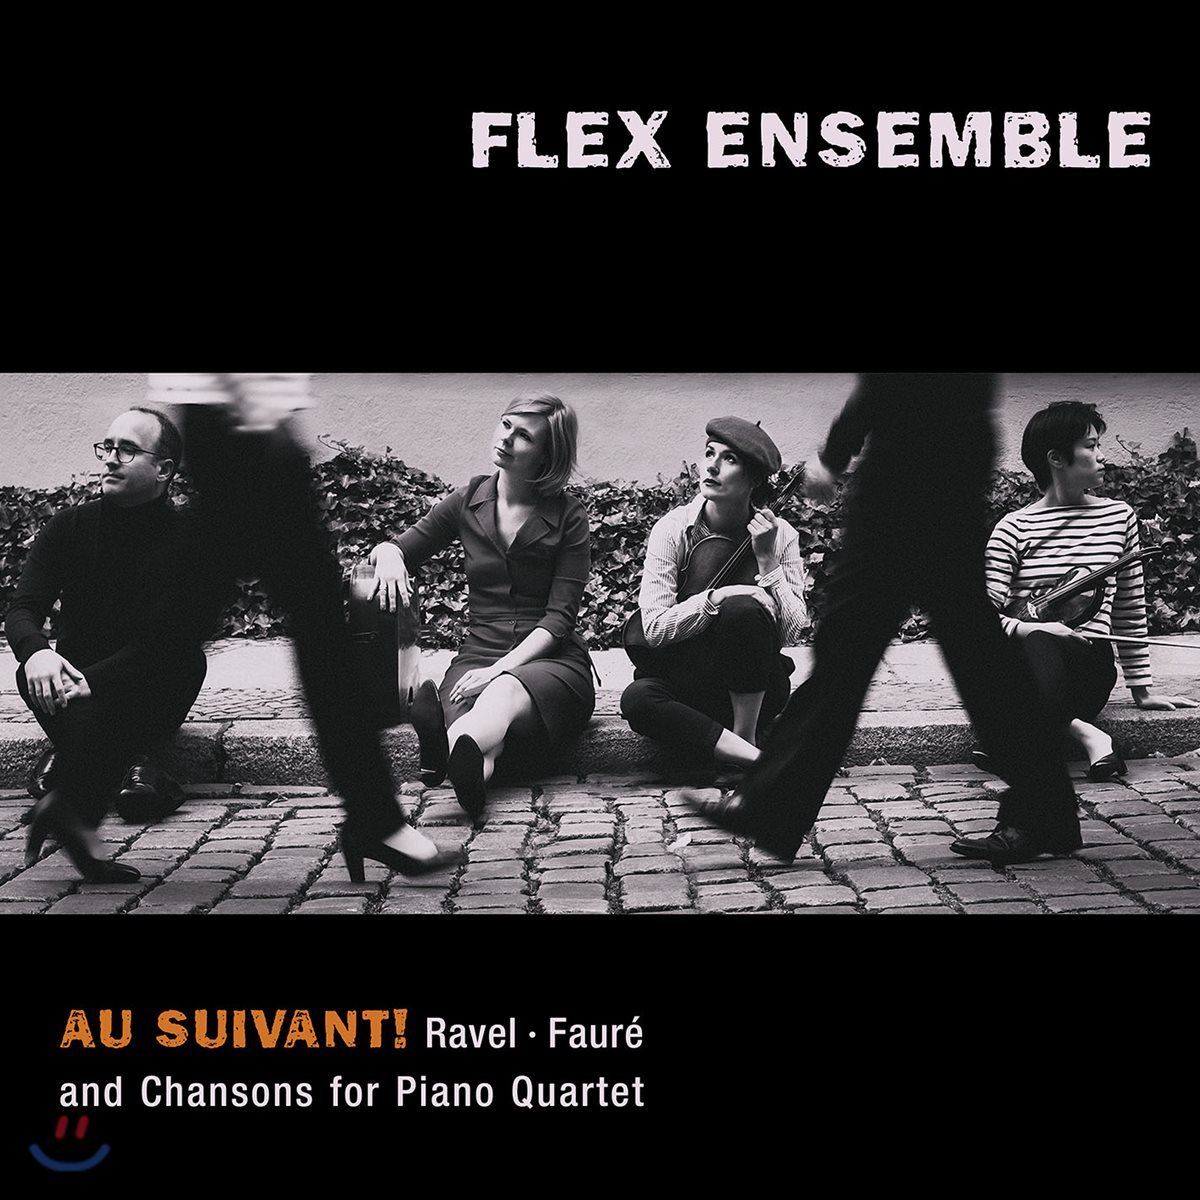 Flex Ensemble 피아노 4중주로 연주하는 라벨, 포레 그리고 샹송 (&#39;Au Suivant!&#39; - Ravel / Faure and Chansons for Piano Quartet)